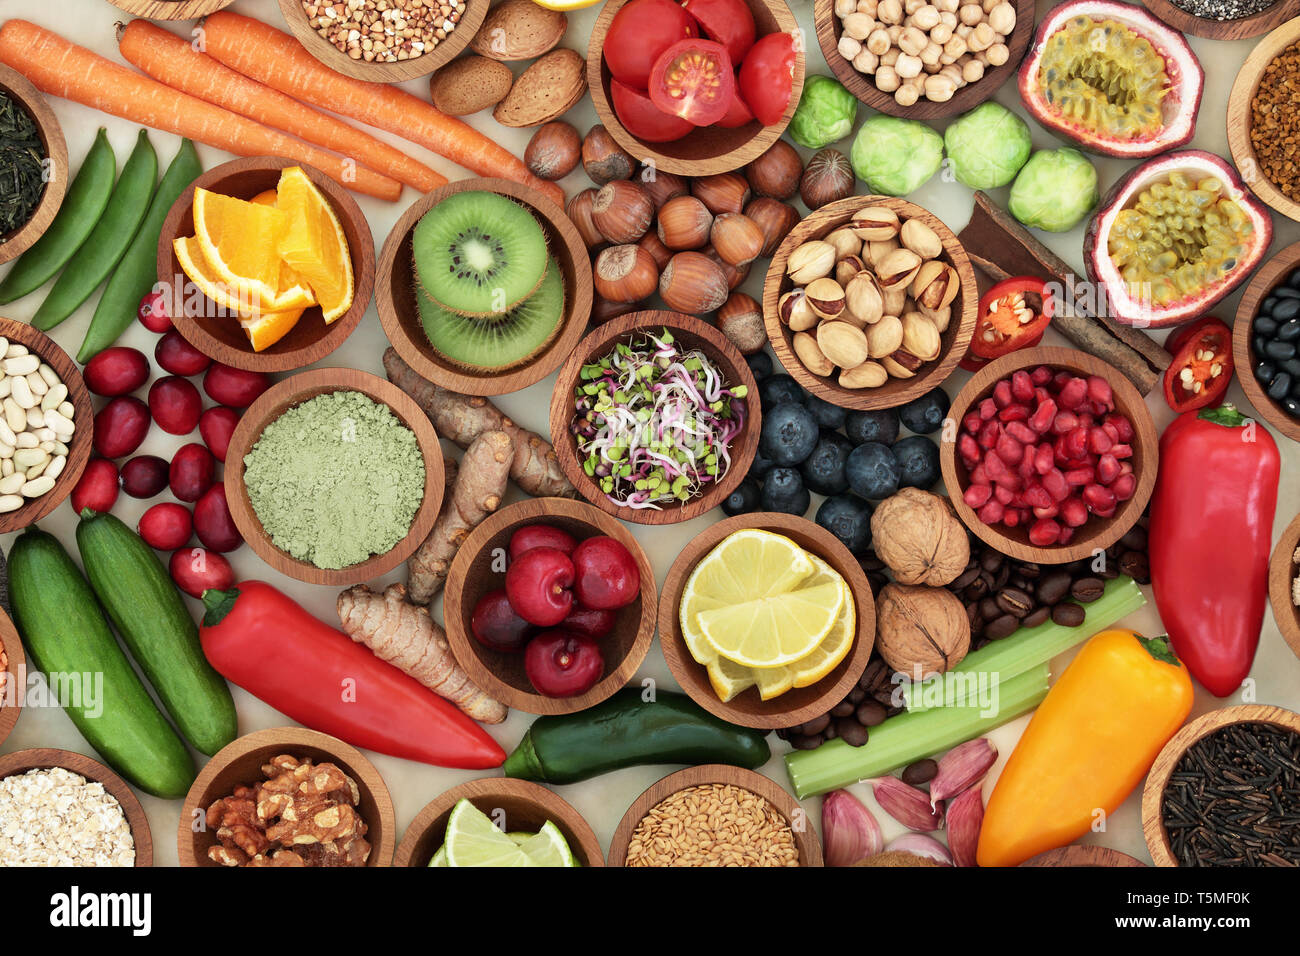 Gesundheit Nahrung für sauber essen Konzept mit frischem Obst, Gemüse, Beilage Pulver, Hülsenfrüchte, Getreide, Samen, Nüssen, Kräutern und Gewürzen. Stockfoto